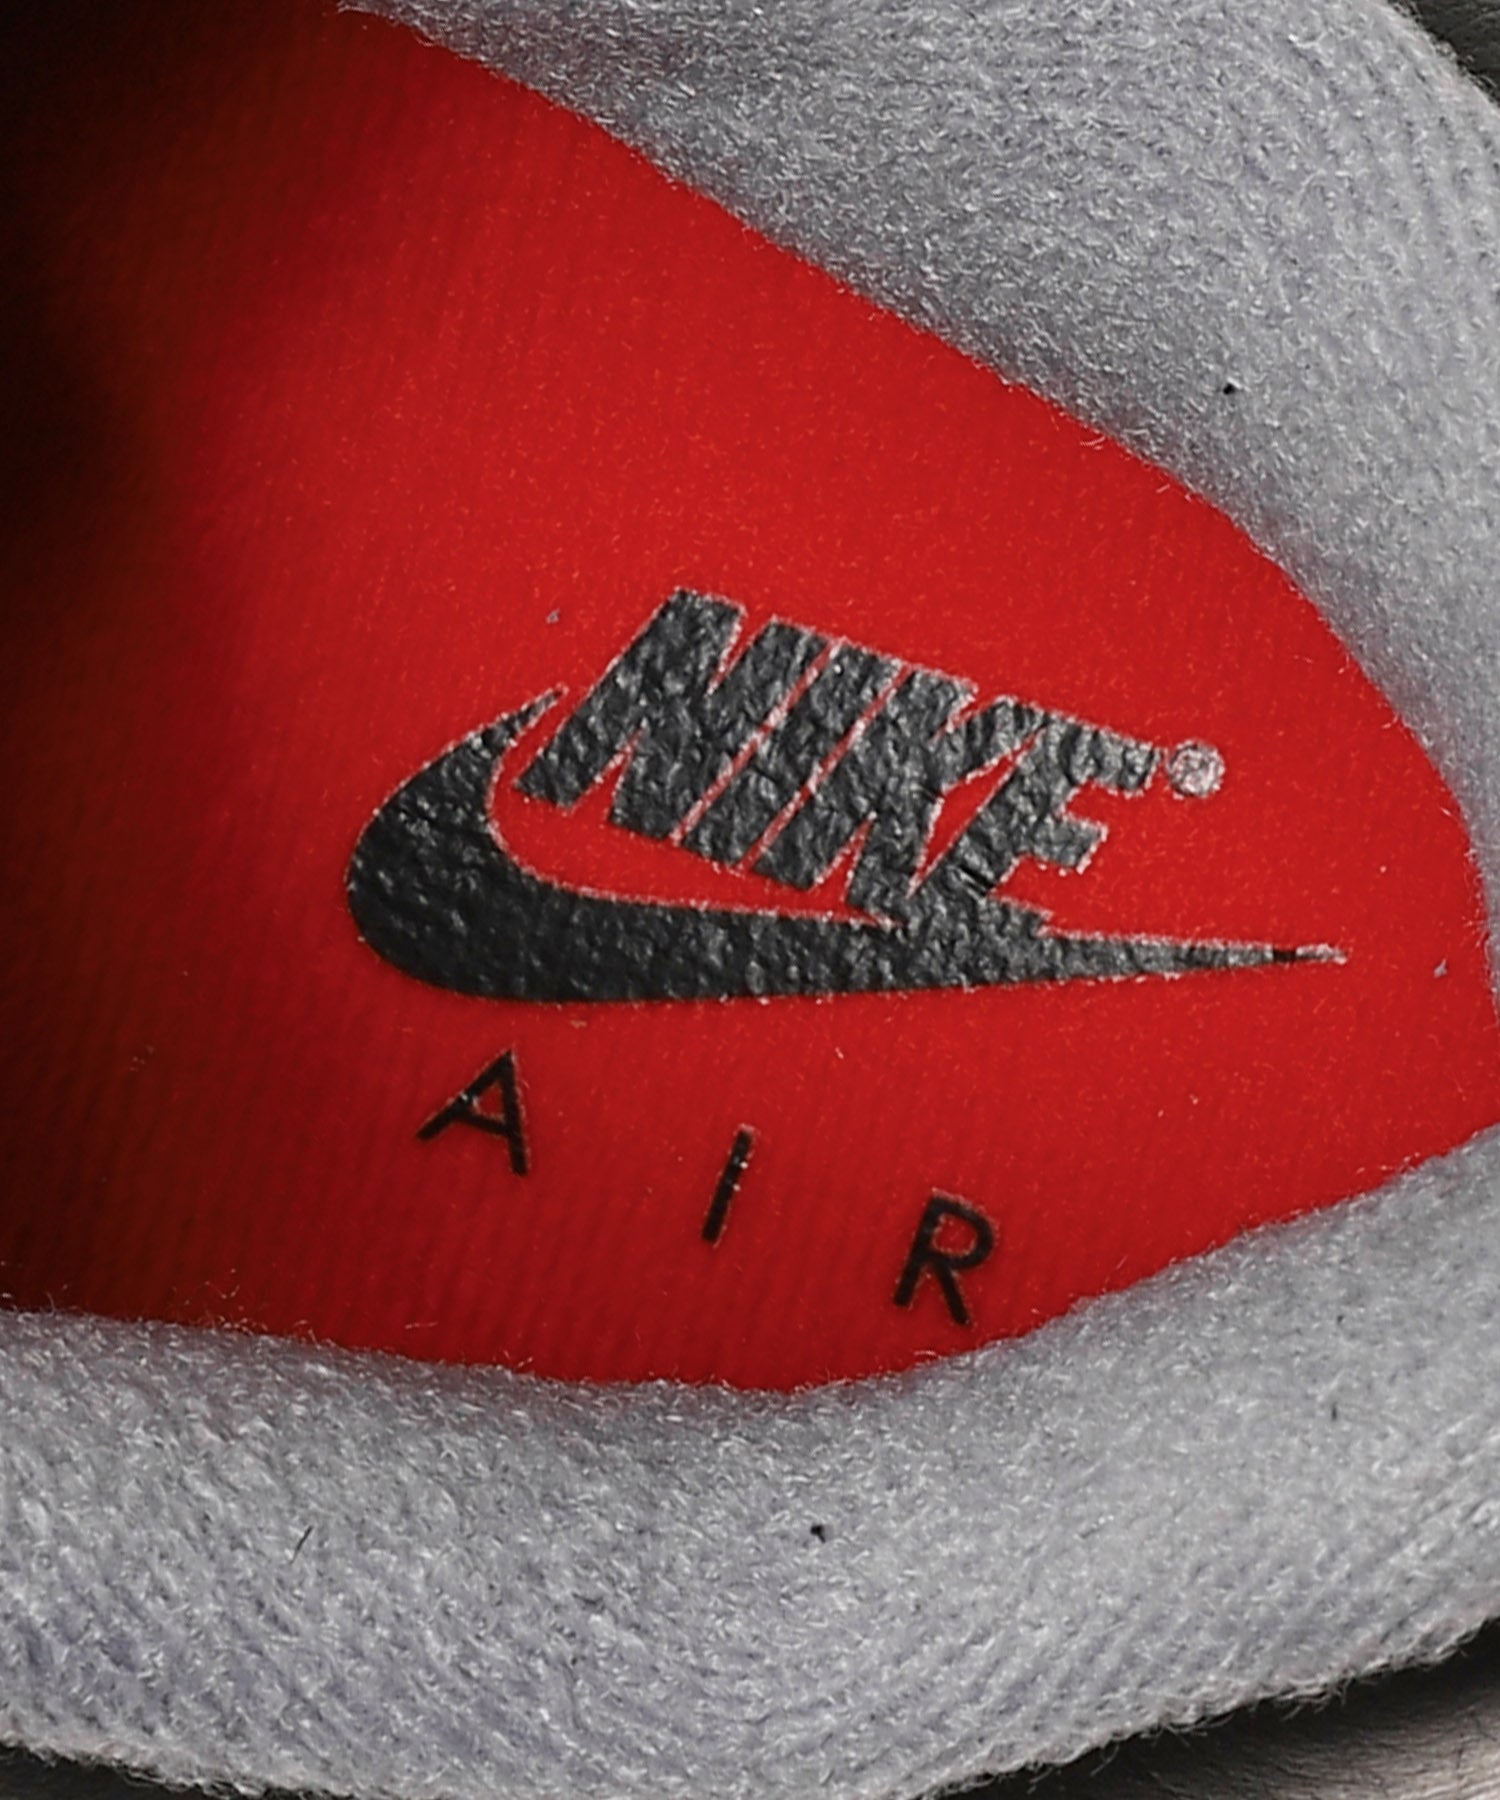 Air Jordan 4 Retro Gs